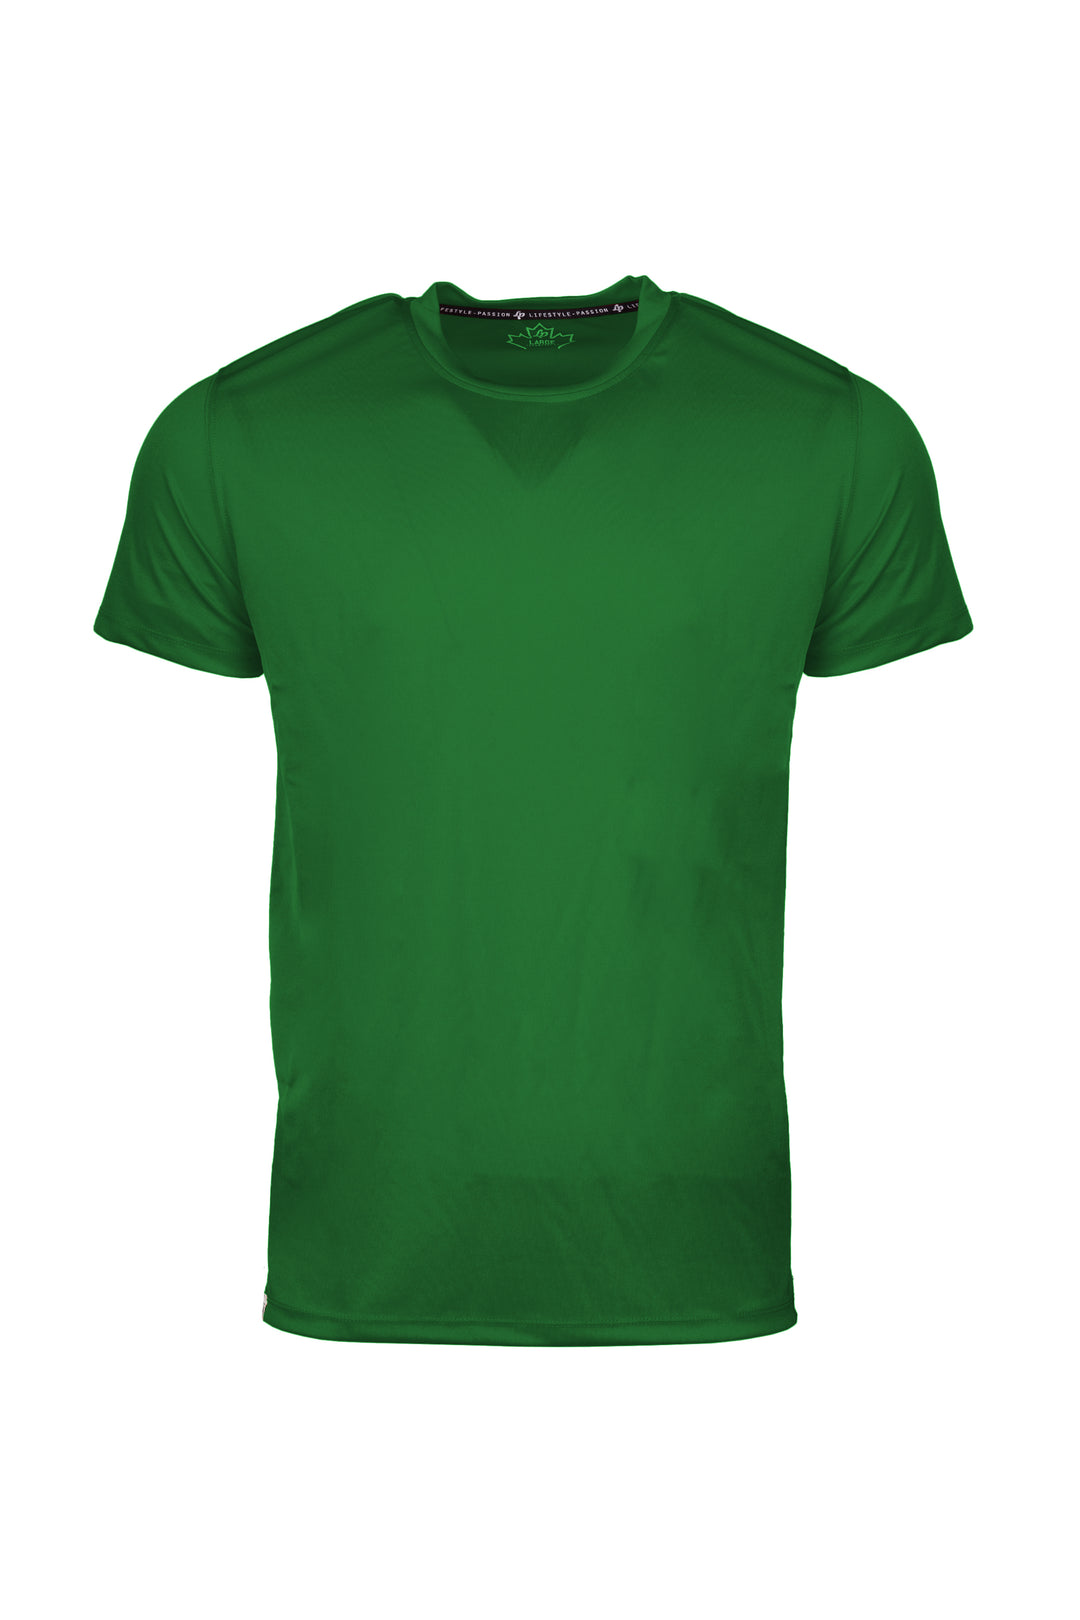 T-shirts sportif [Homme] [Vert]